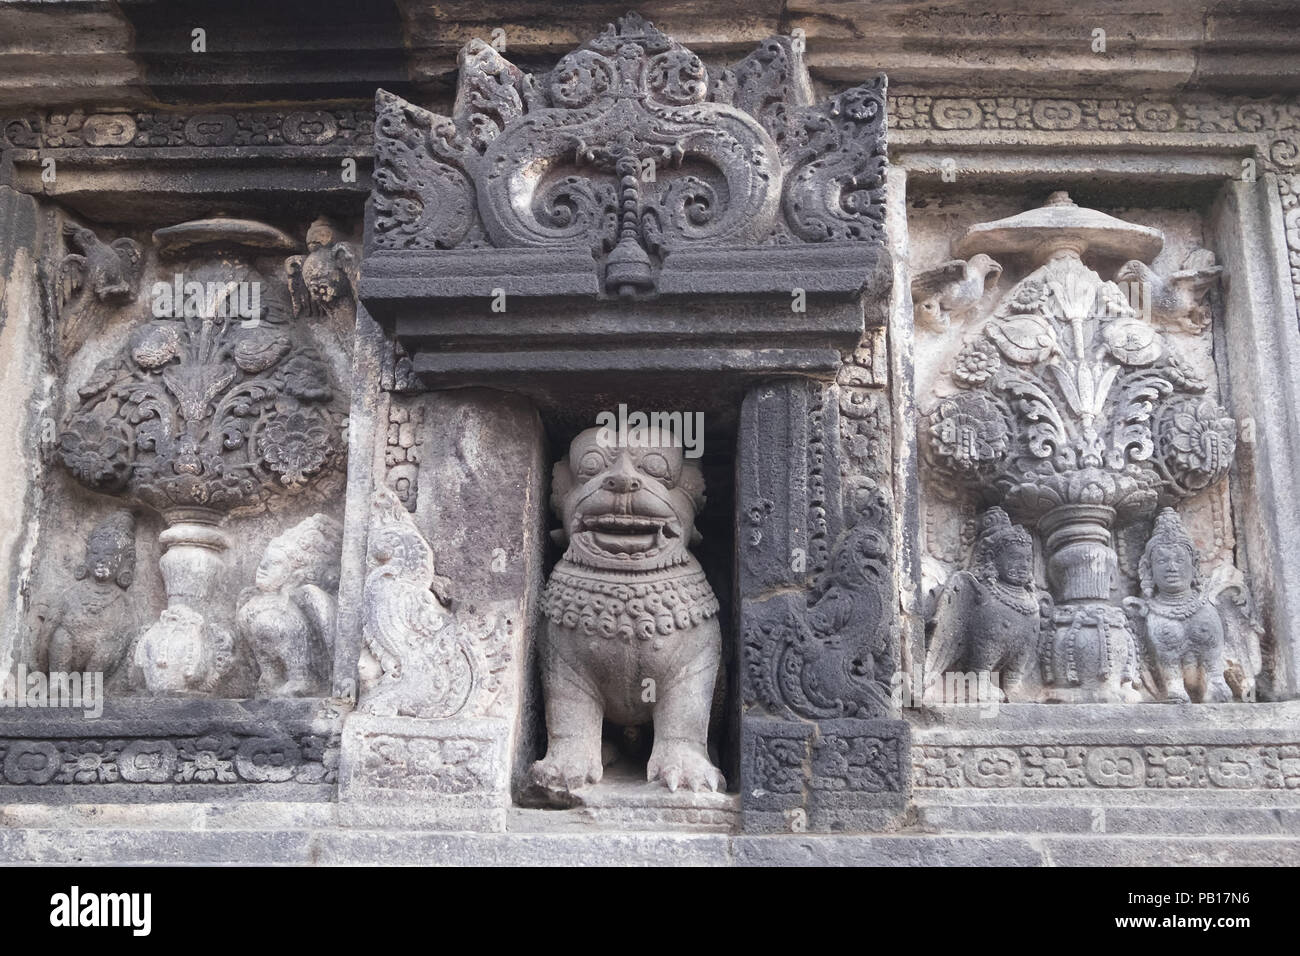 Mur libre ornés de bas-reliefs de la religion. La sculpture sur pierre très détaillées. Temple bouddhiste de Borobudur, Magelang, Indonésie Banque D'Images